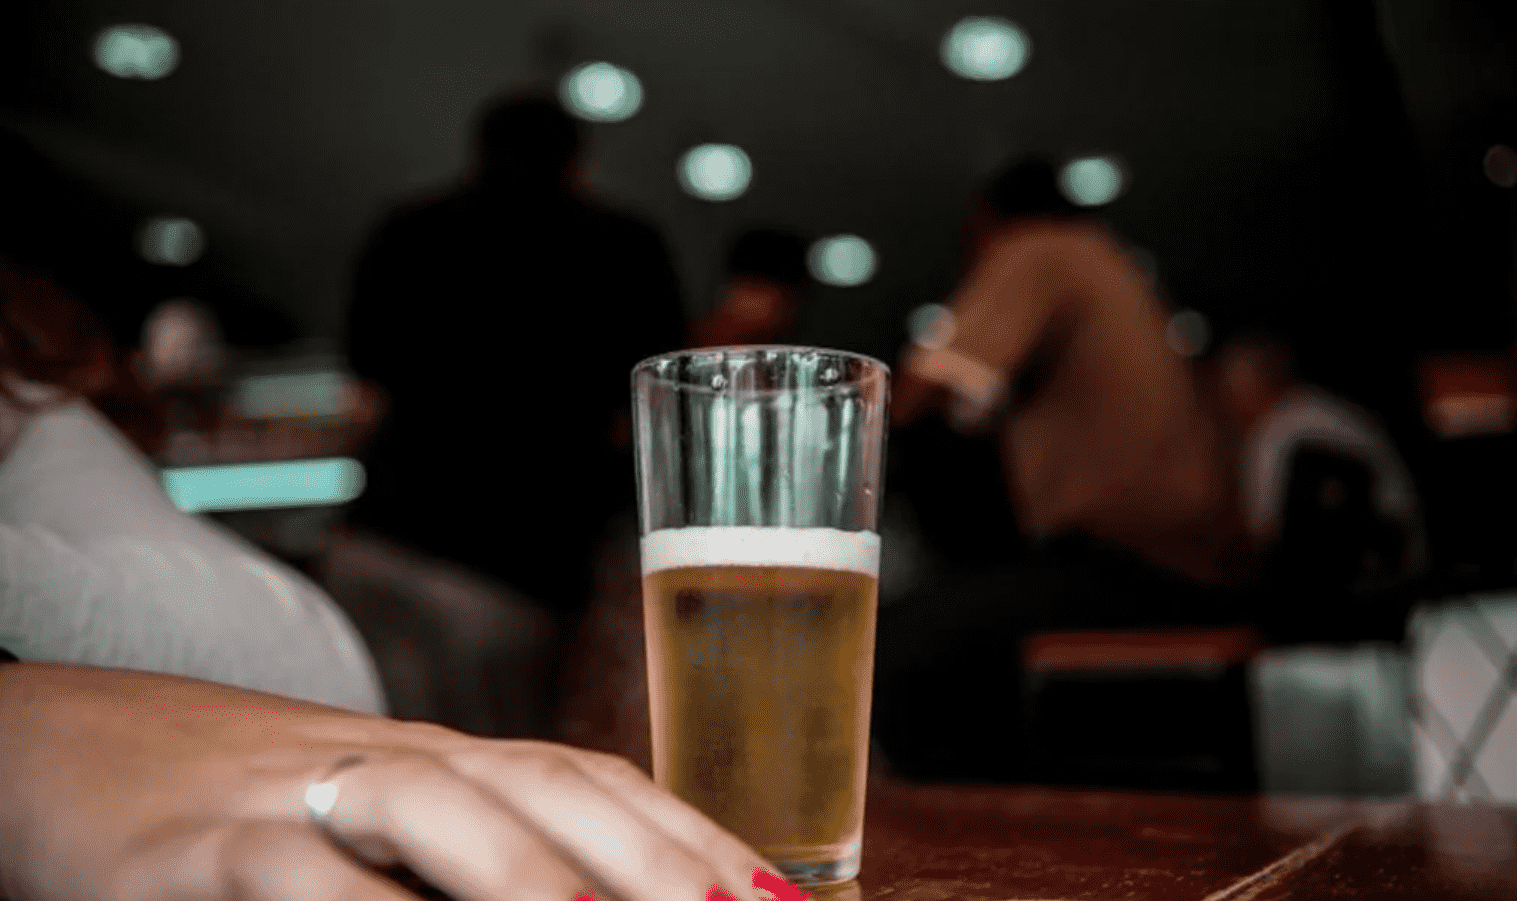 Eleições 2020: foto mostra mão ao lado de um copo de cerveja